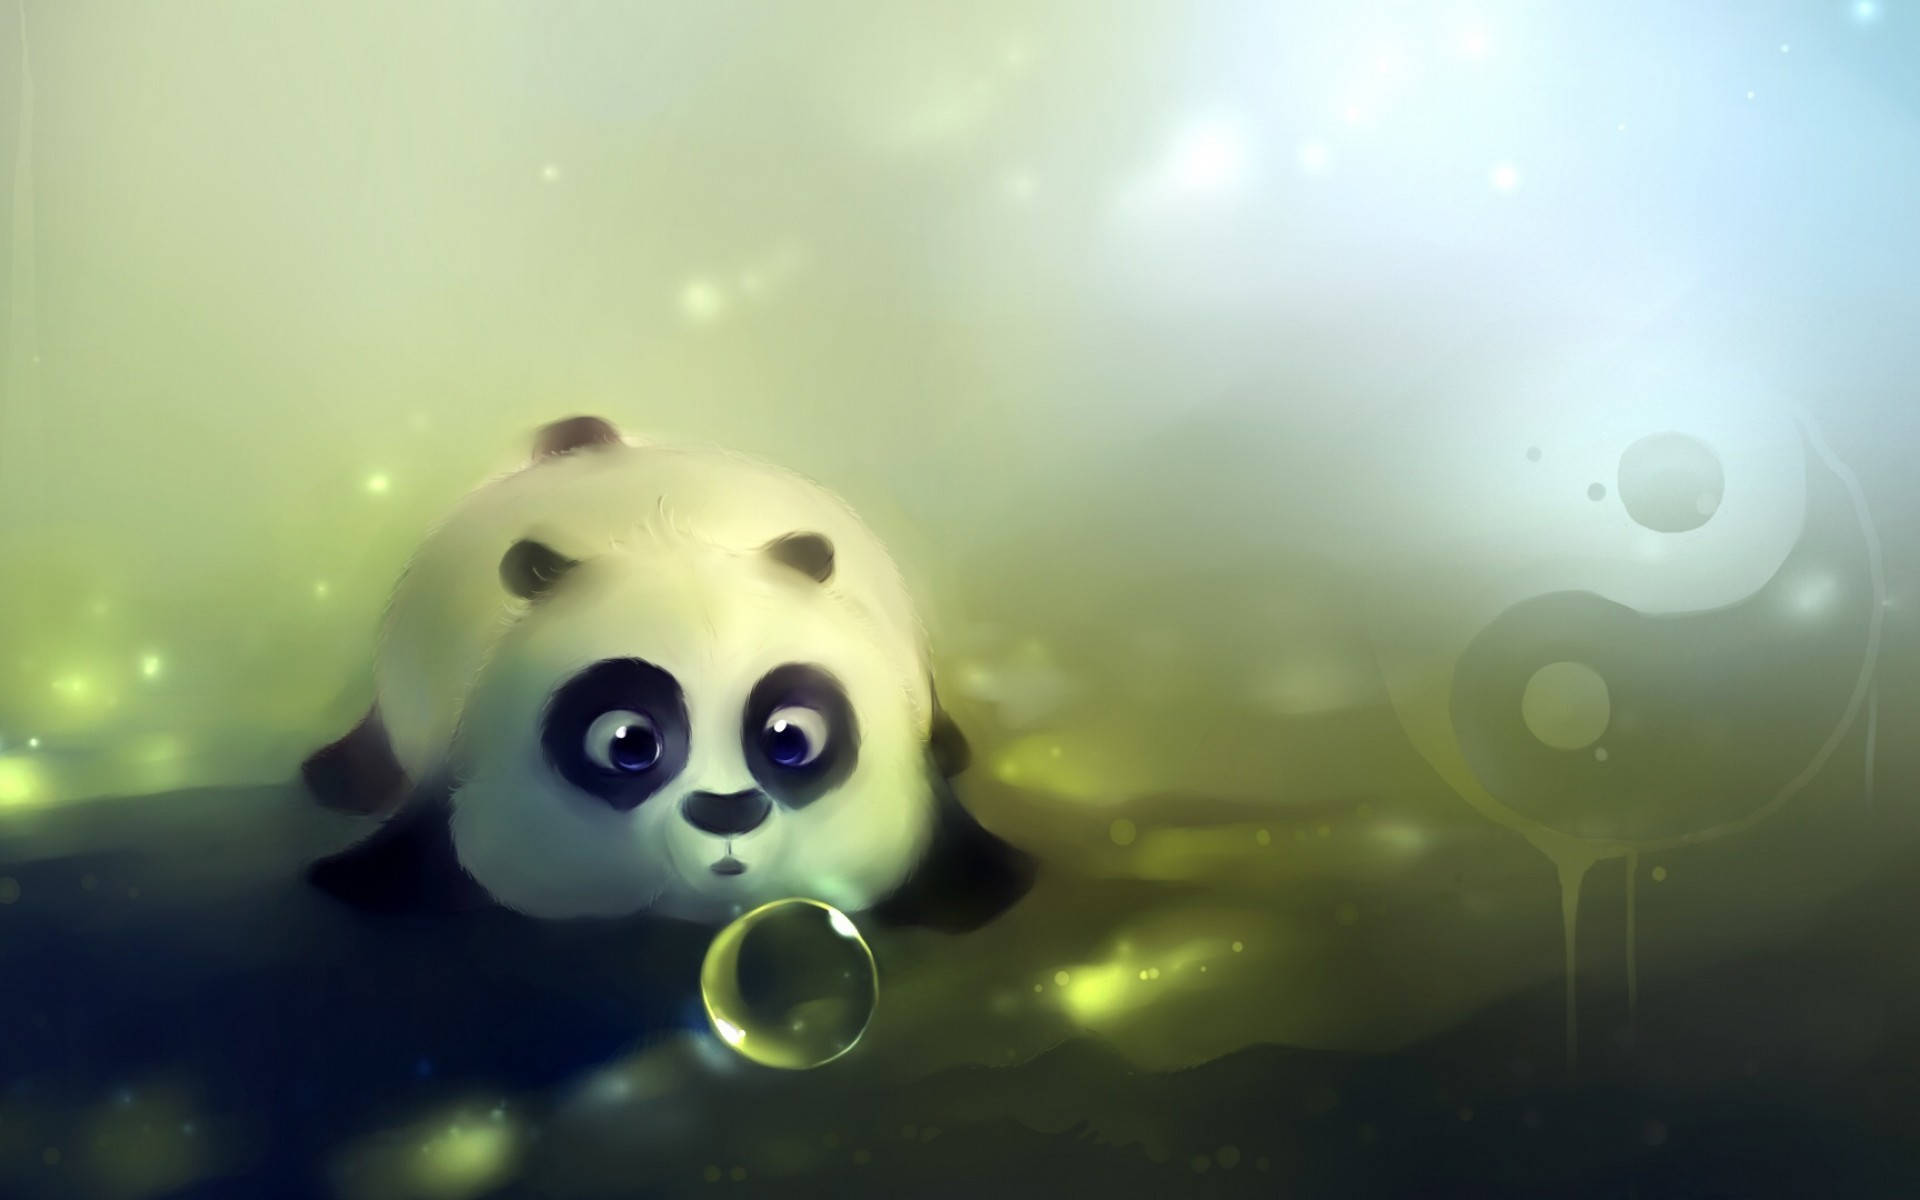 Cute Hd Image Of A Panda